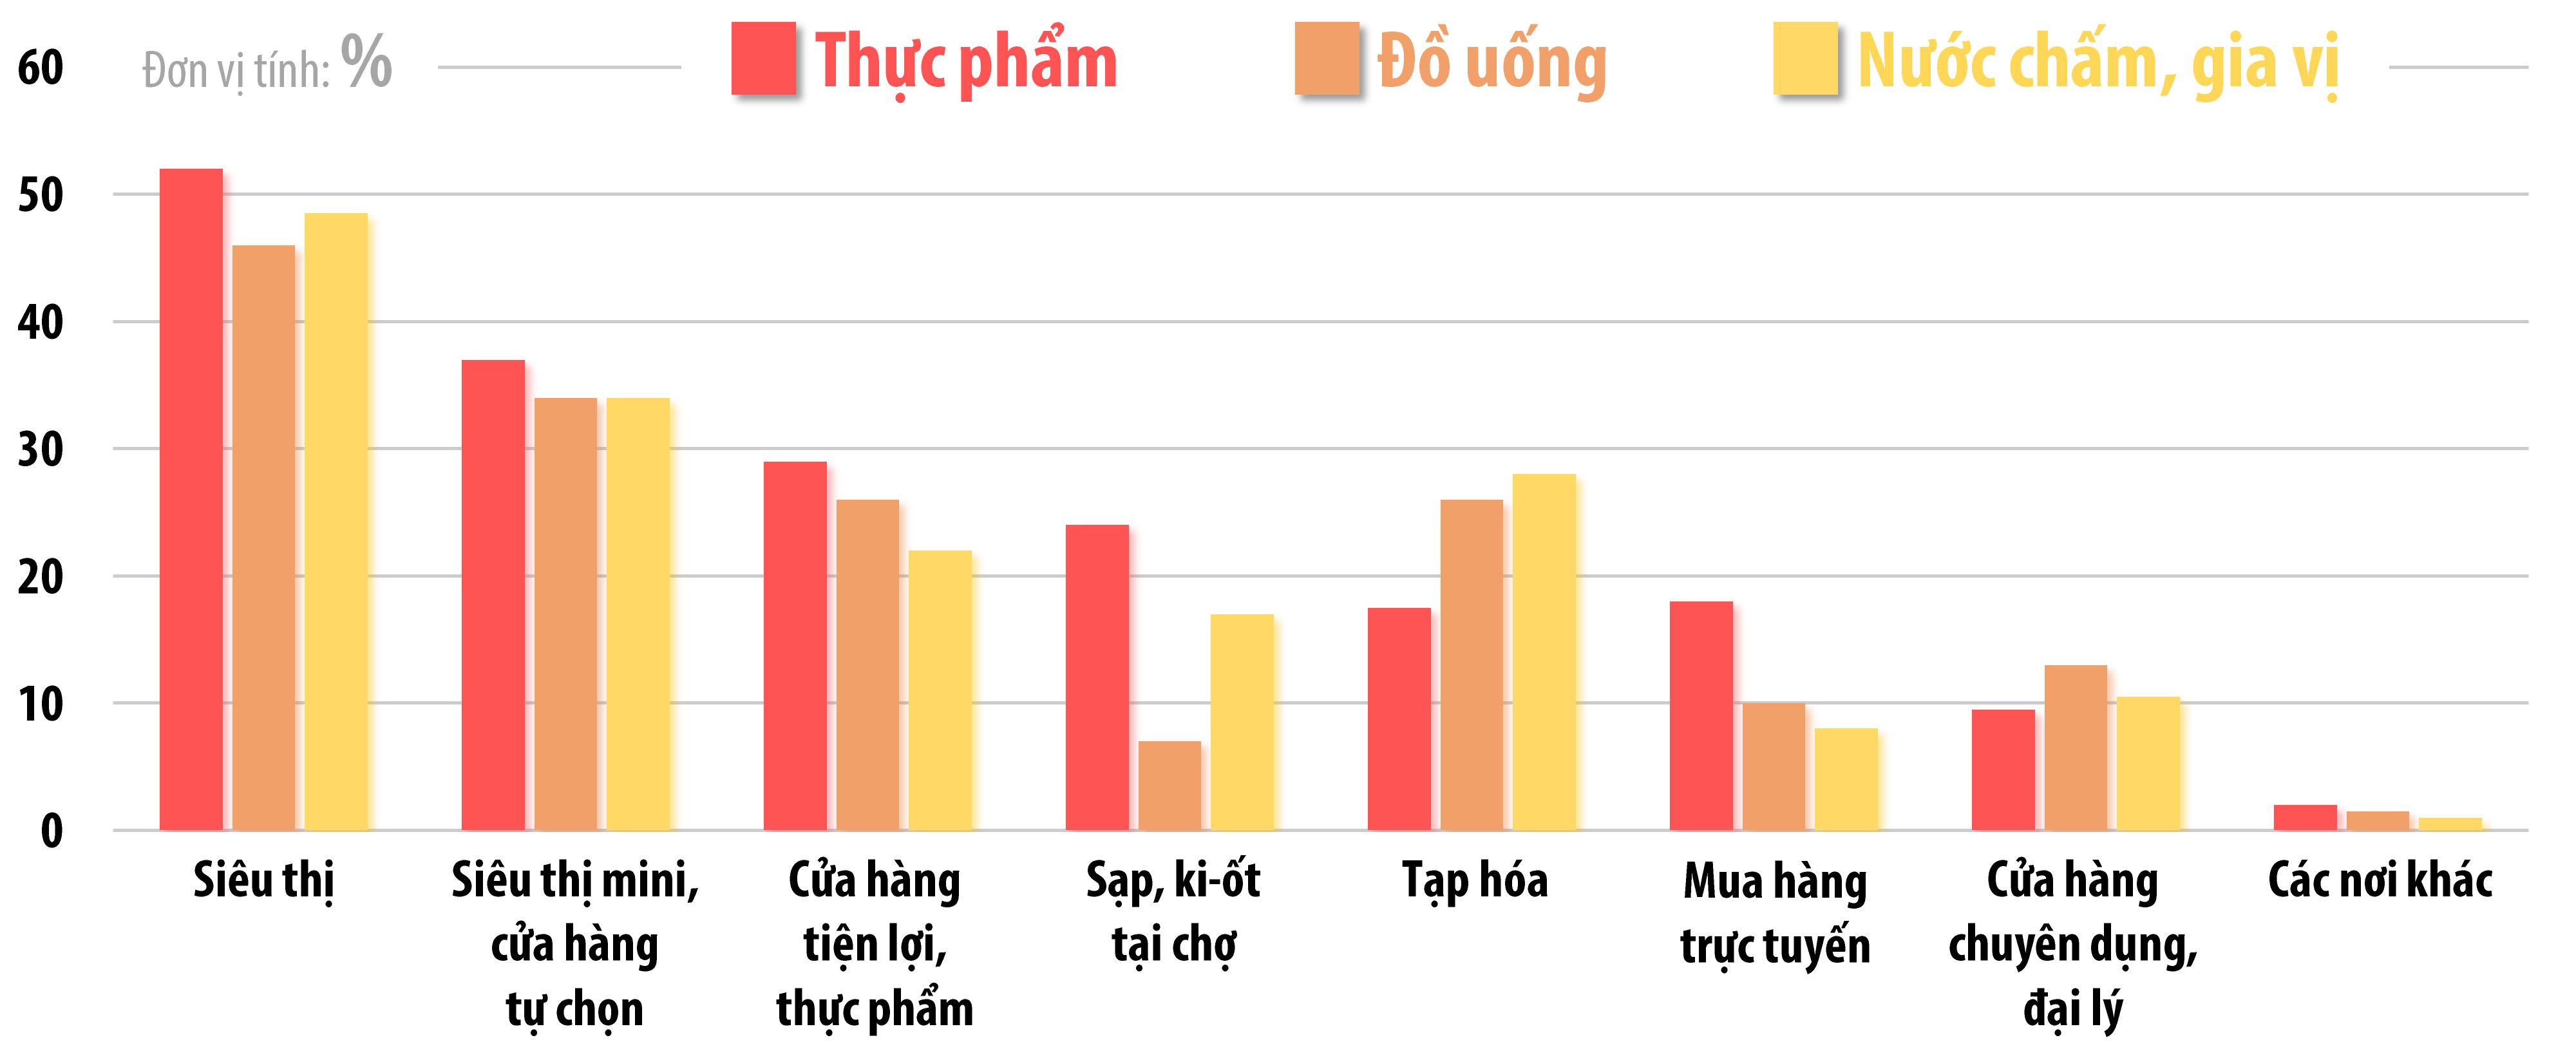 Biểu đồ thể hiện xu hướng lựa chọn các kênh mua sắm của người tiêu dùng đối với các mặt hàng: thực phẩm, đồ uống, nước chấm, gia vị theo kết quả cuộc khảo sát Hành vi người tiêu dùng dưới tác động của đại dịch Covid-19 của Hội Doanh nghiệp hàng Việt Nam chất lượng cao thực hiện vào cuối tháng 5-2020. Nguồn: Hội Doanh nghiệp hàng Việt Nam chất lượng cao (Đồ họa: Hải Quân) 